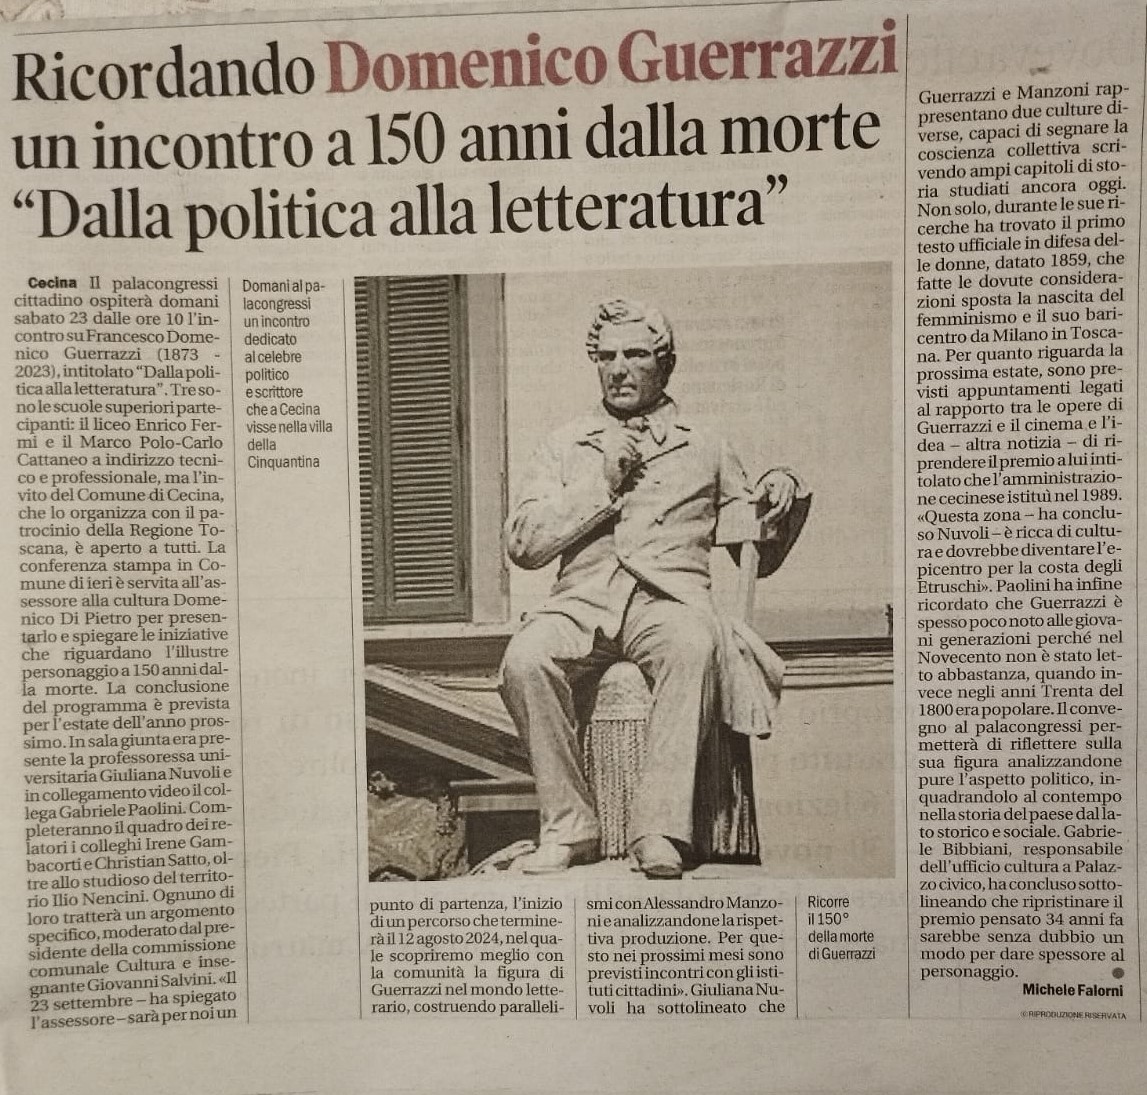 Conferenza stampa per Convegno “Francesco Domenico Guerrazzi 1873-2023. Dalla politica alla letteratura”, ne “il Tirreno”, 22 settembre